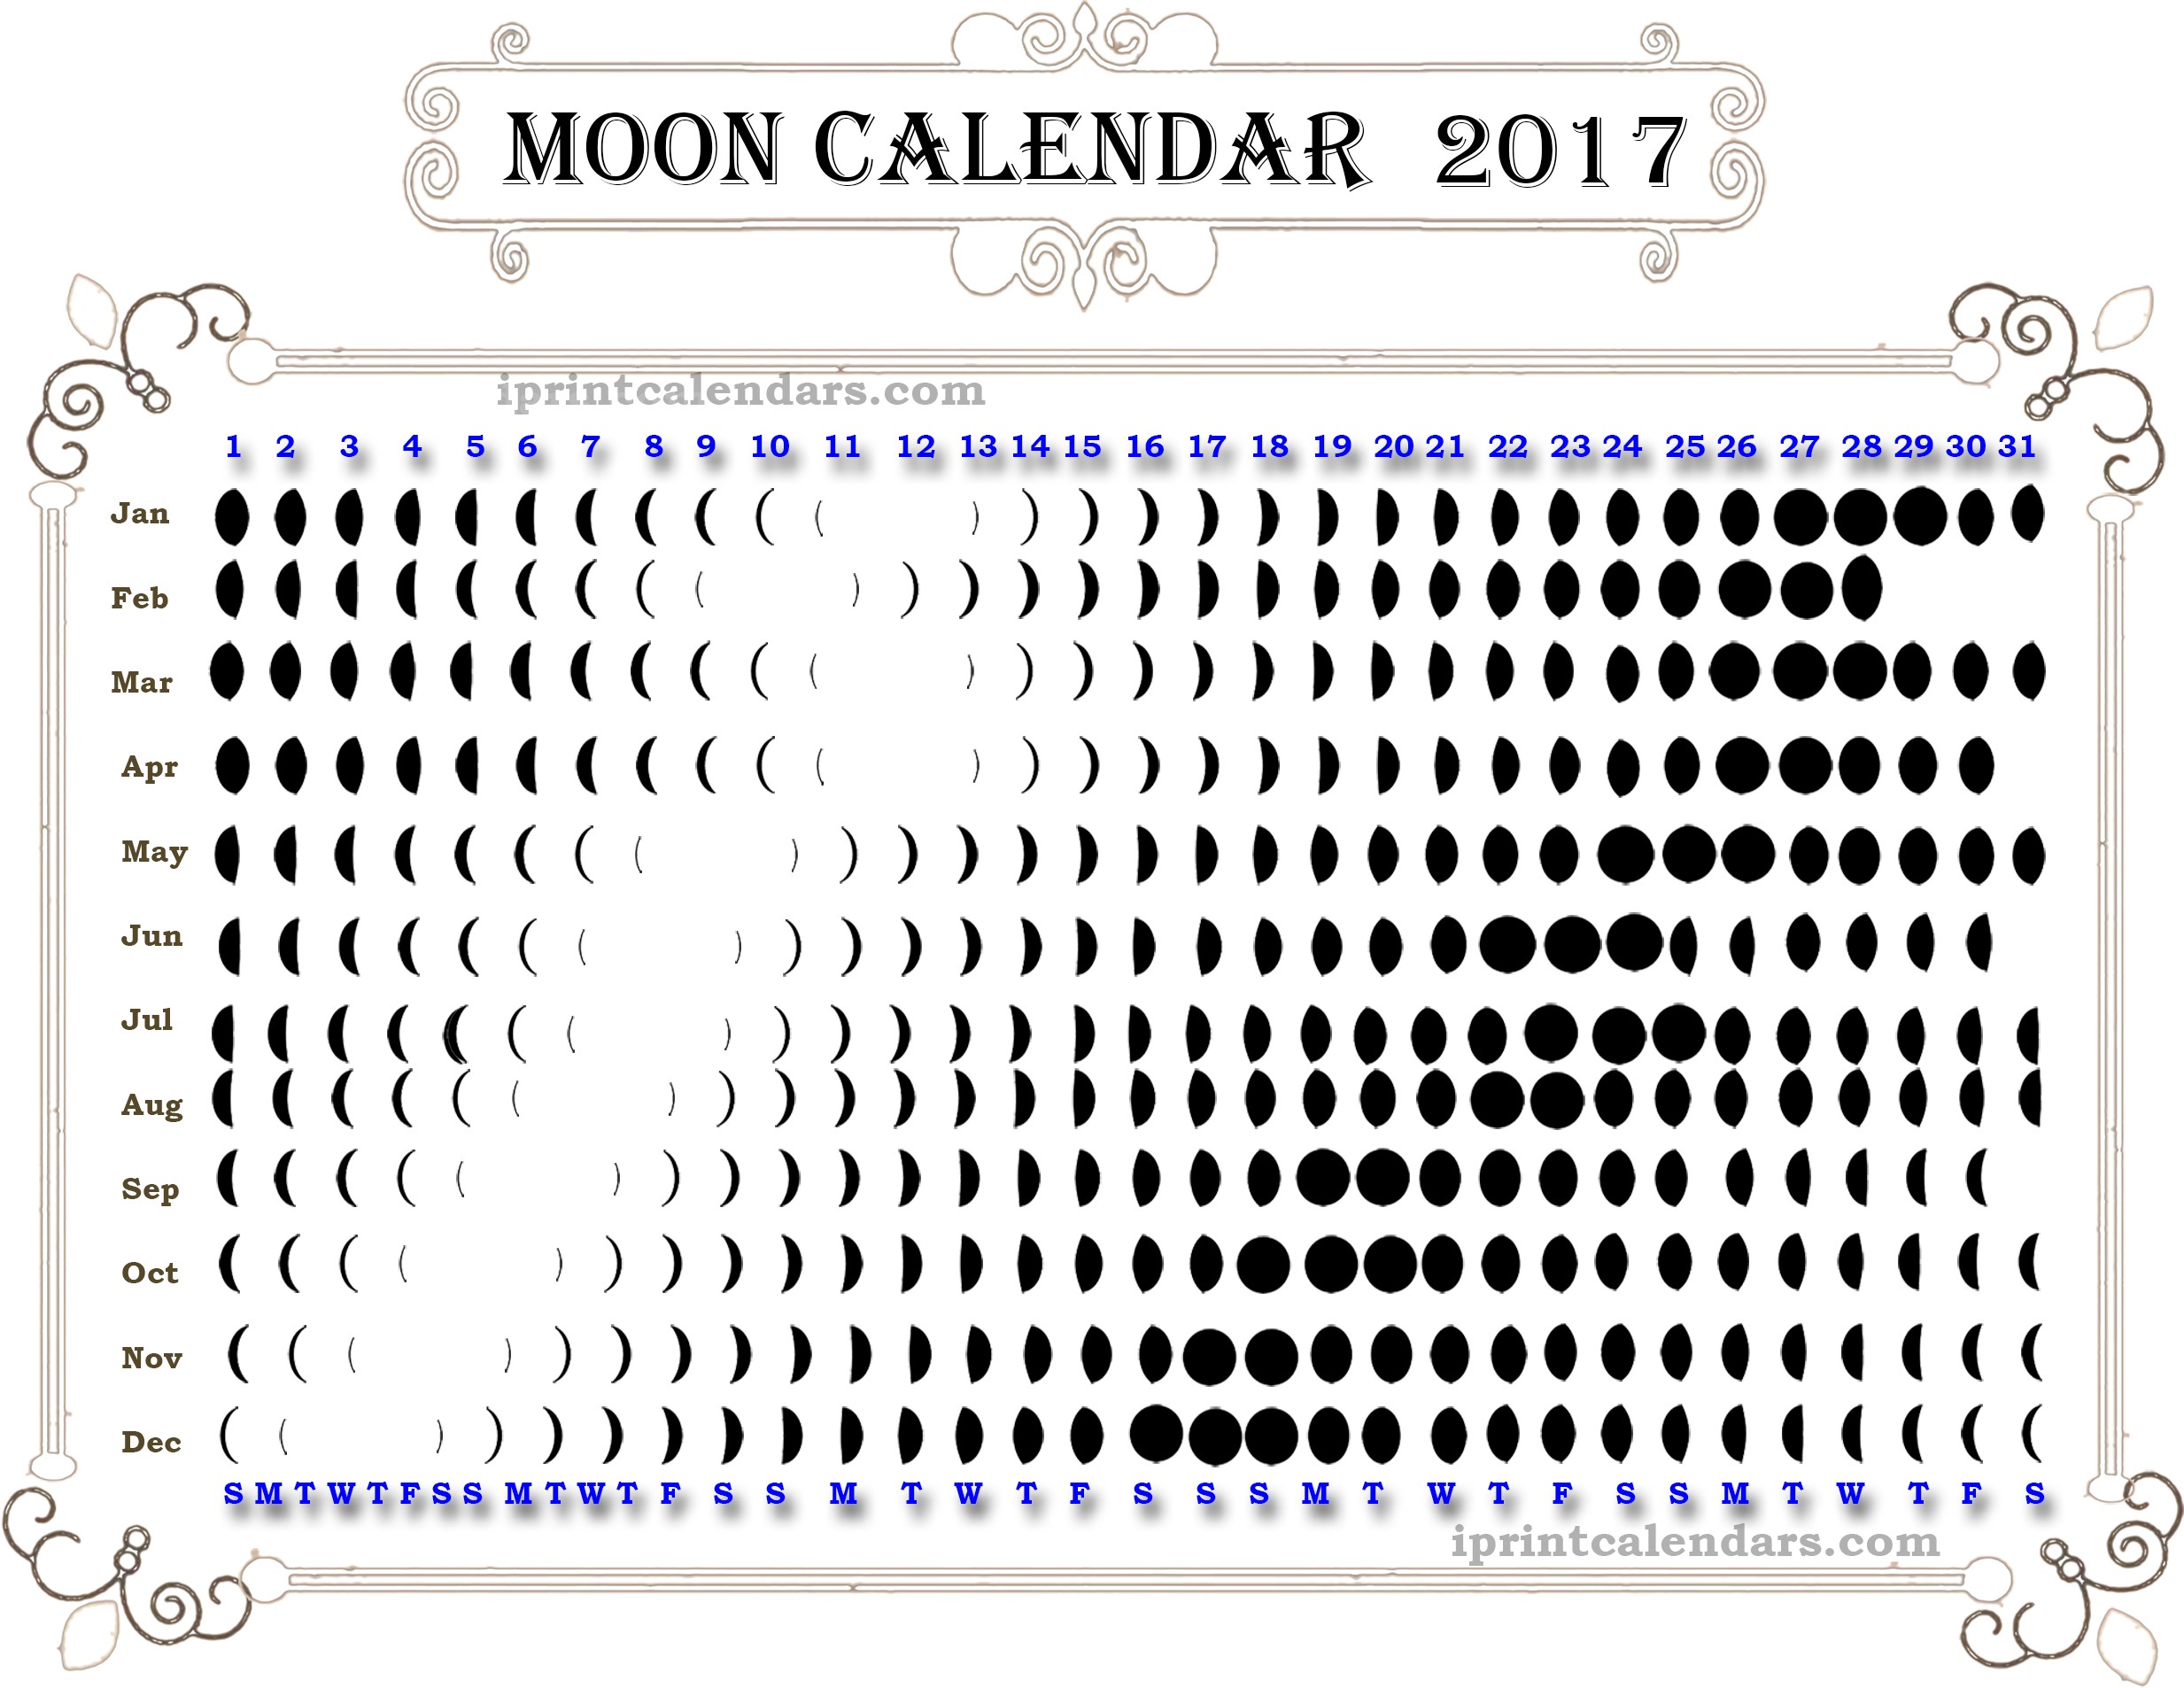 lunar calendar 2017 printable